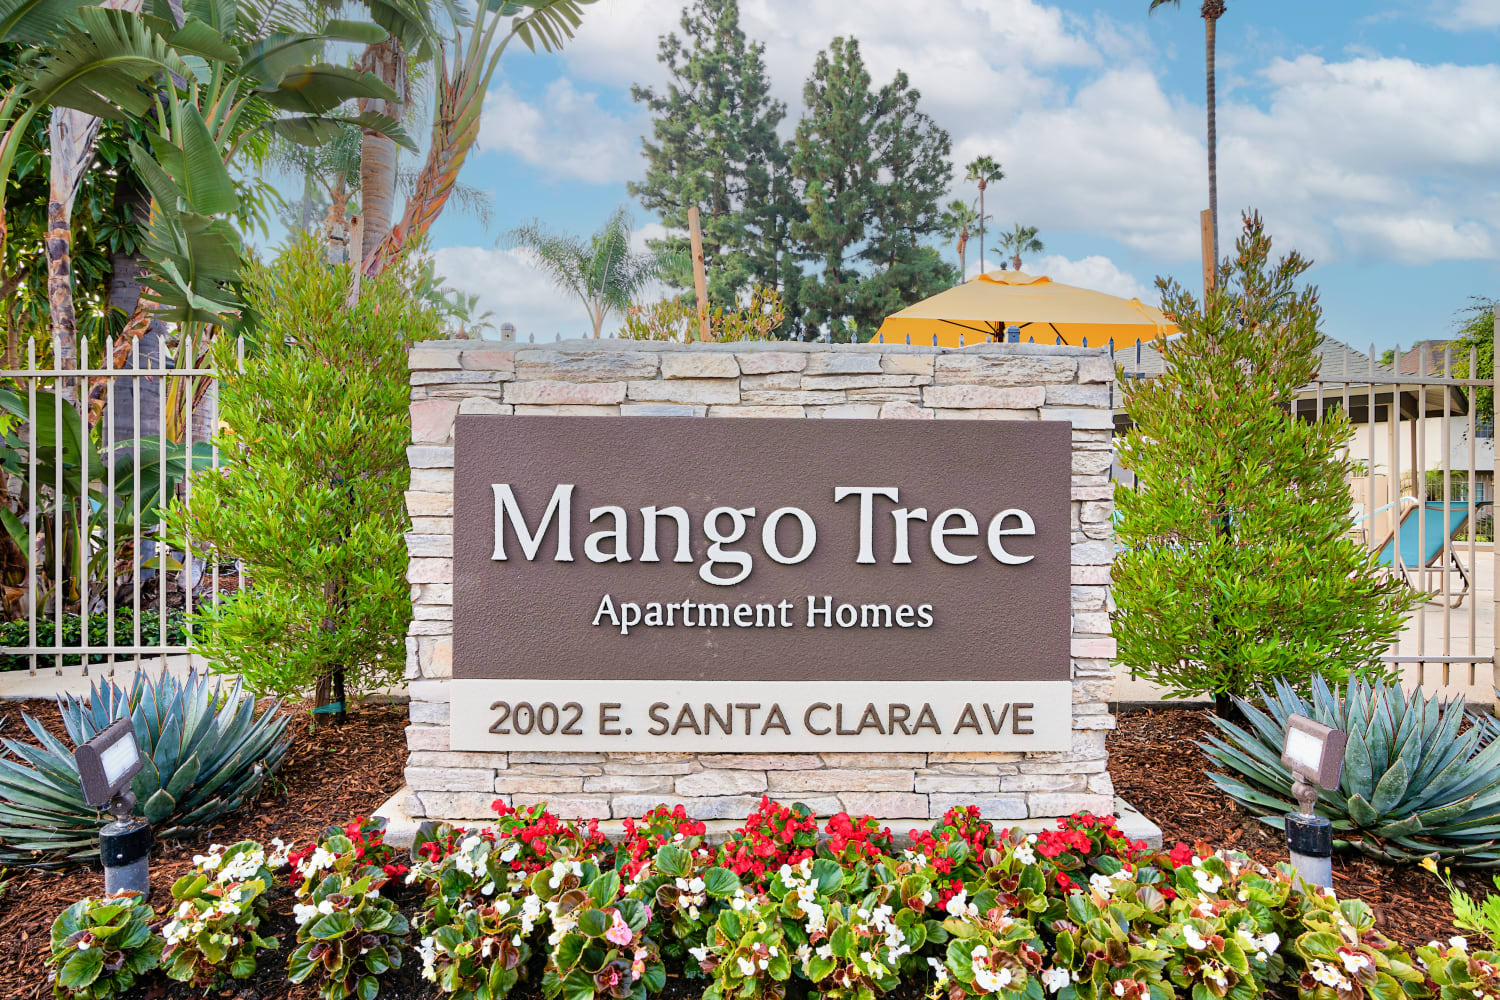 Mango Tree apartments in Santa Ana, California